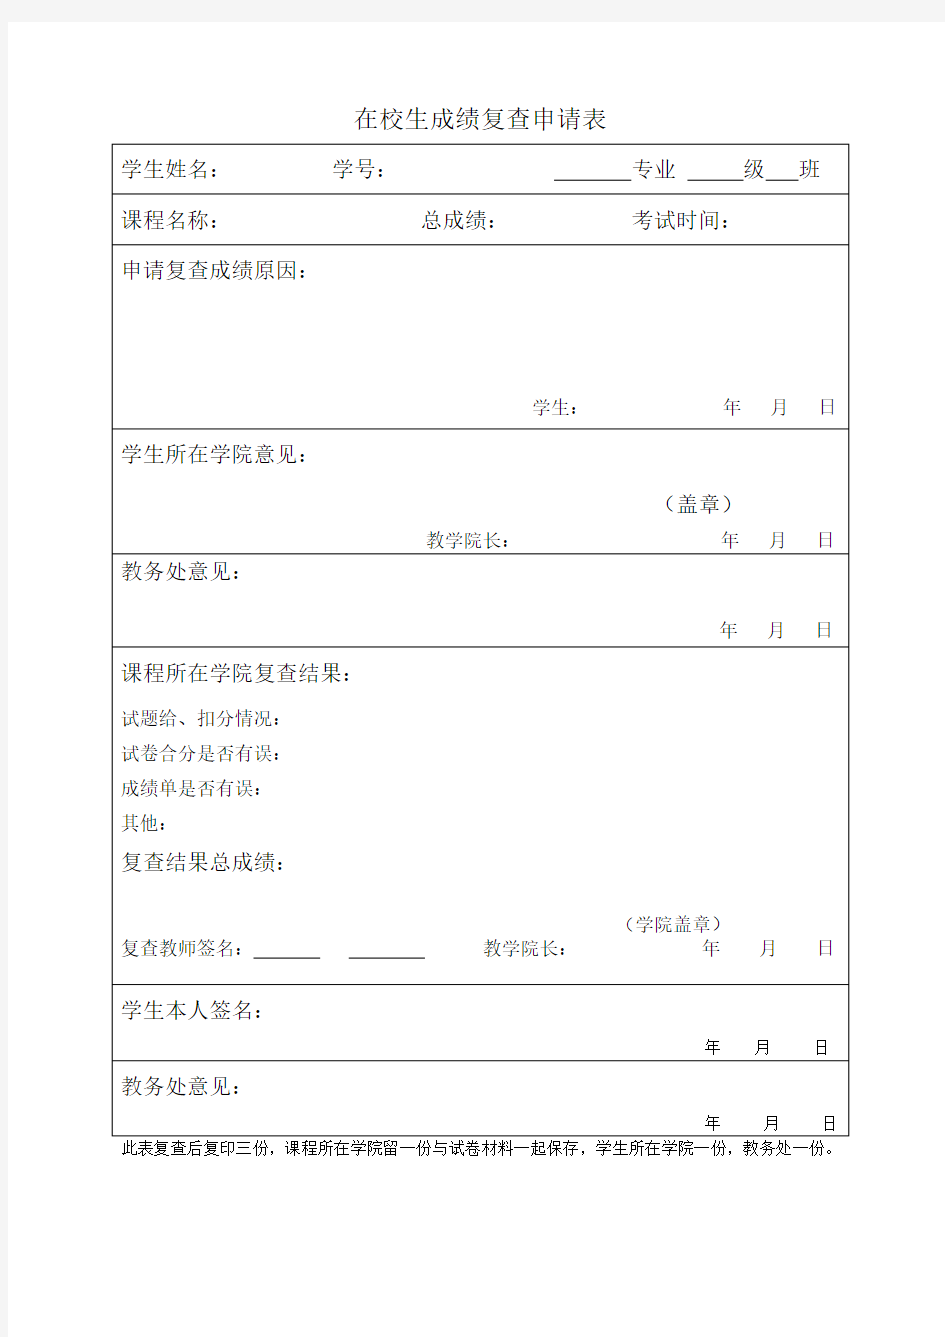 河南工业大学在校学生成绩复查申请表